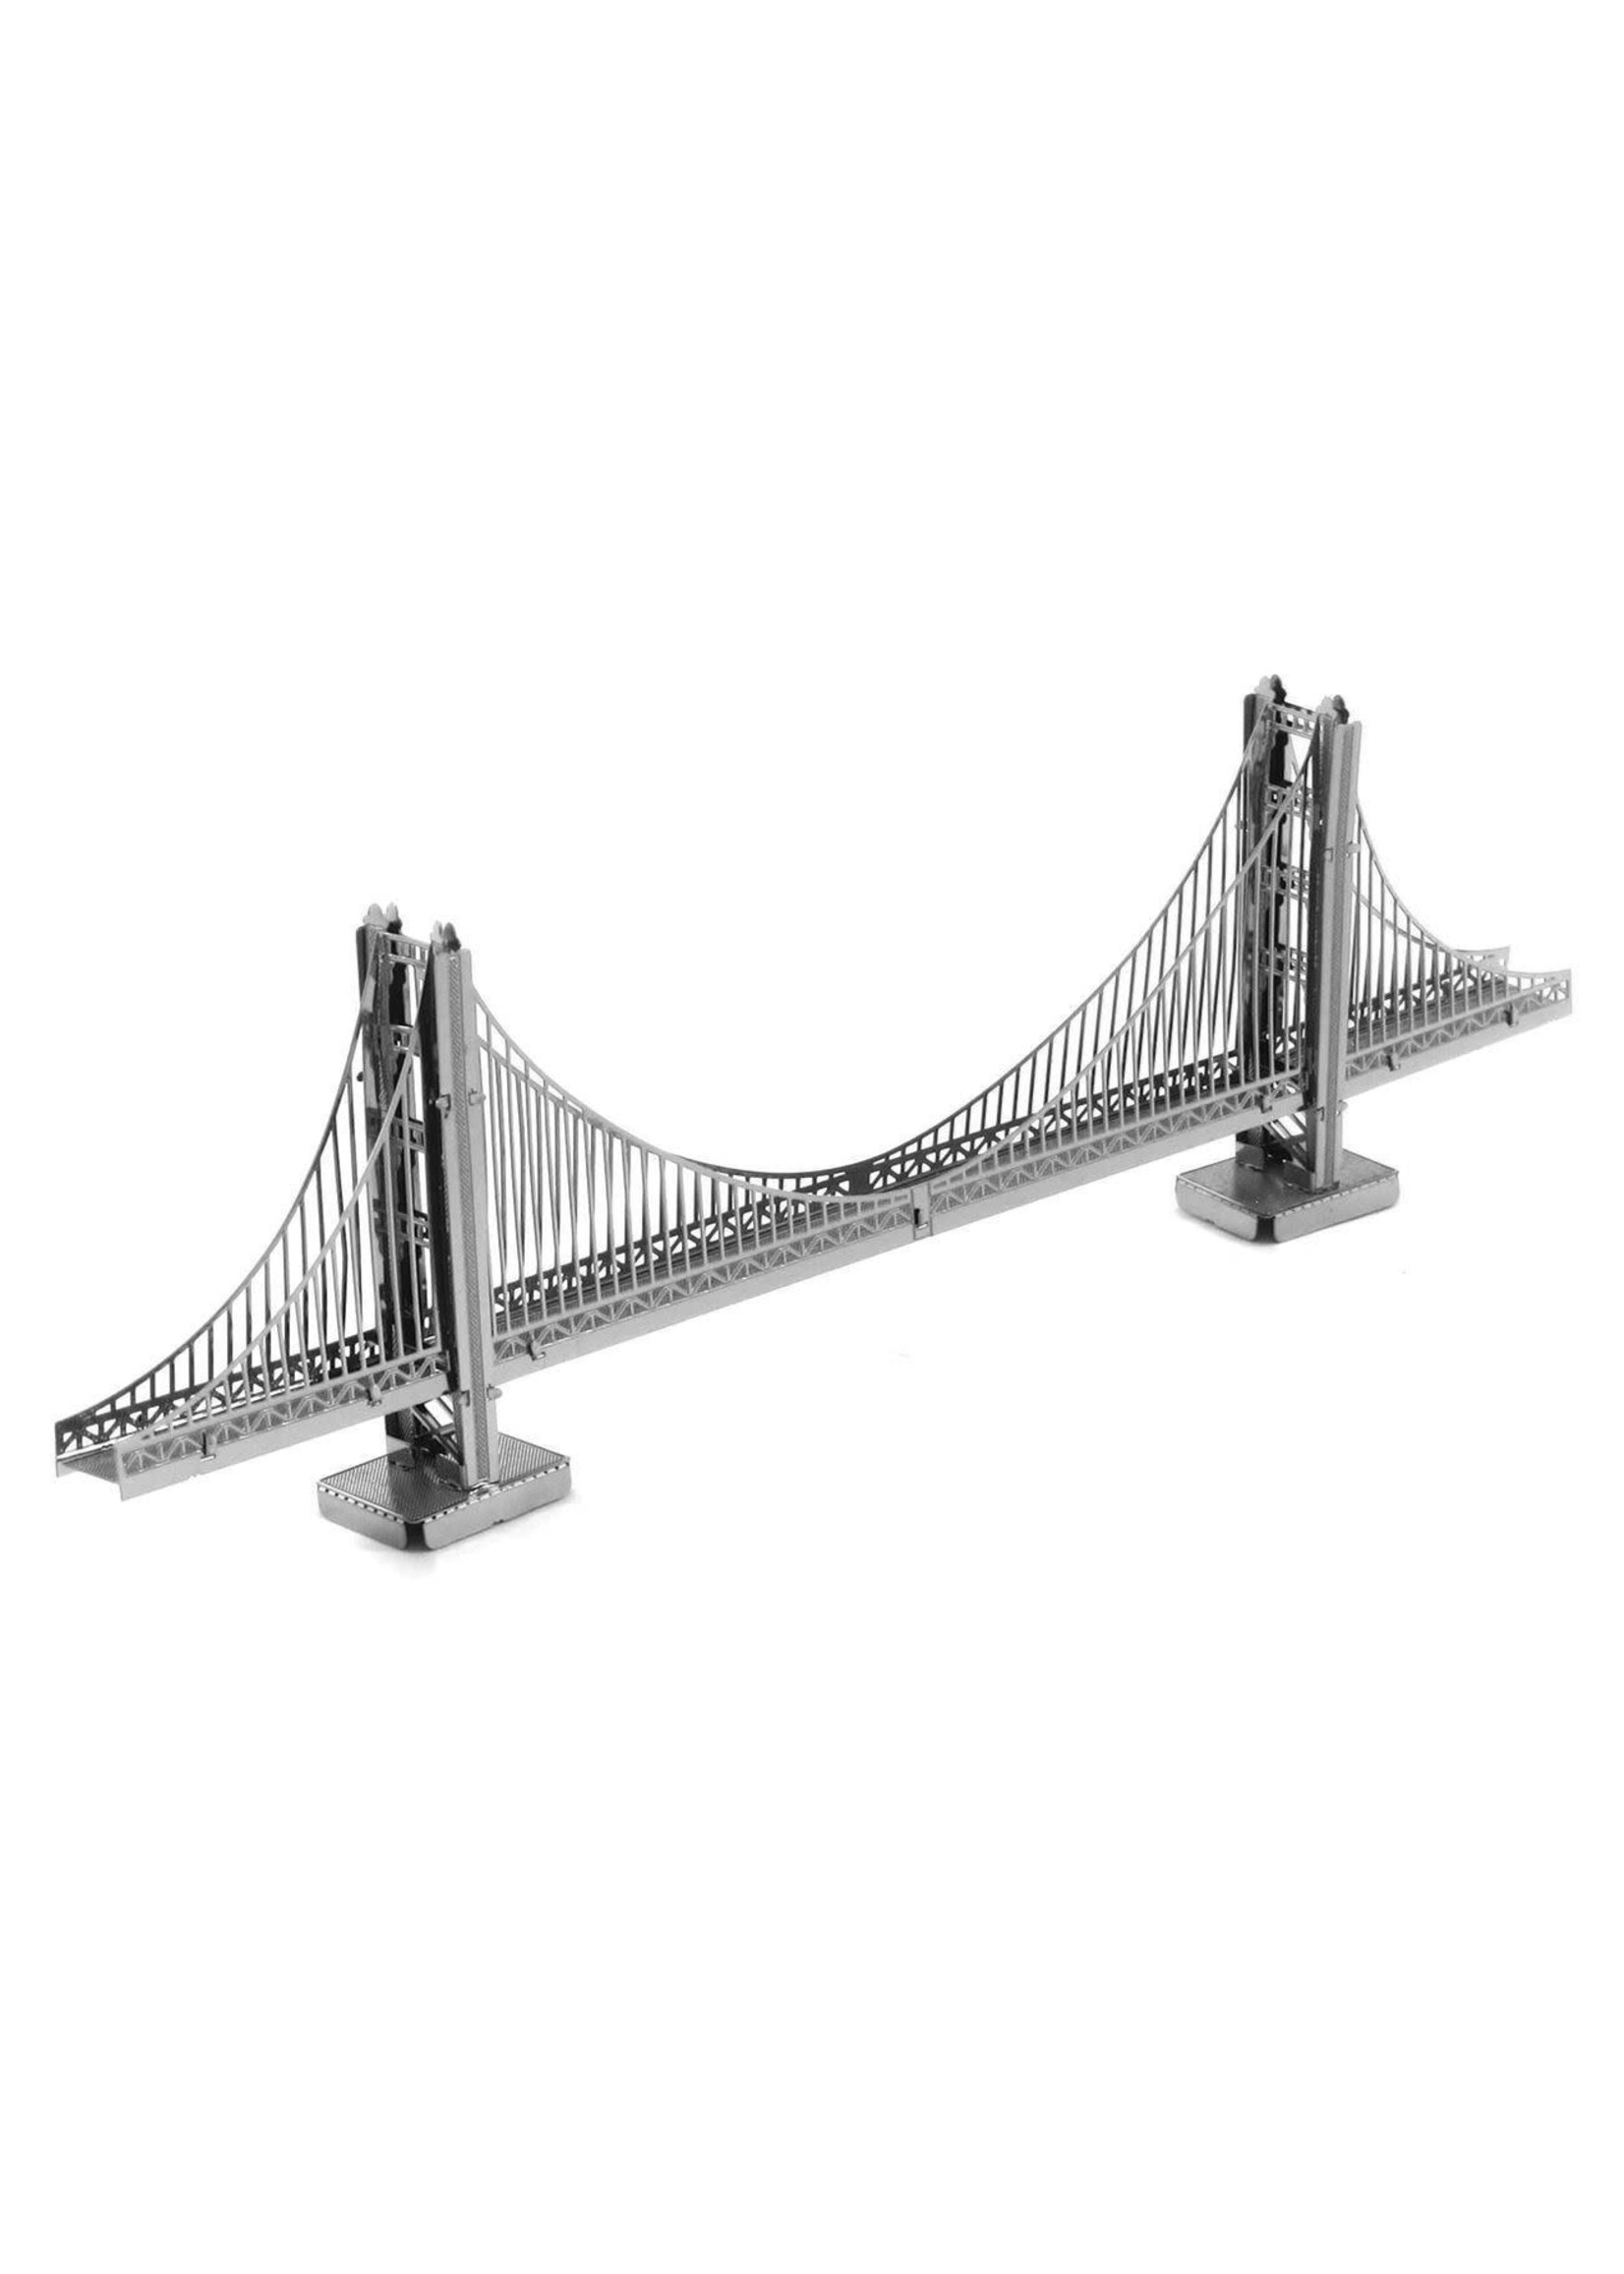 MetalWorks Golden Gate Bridge